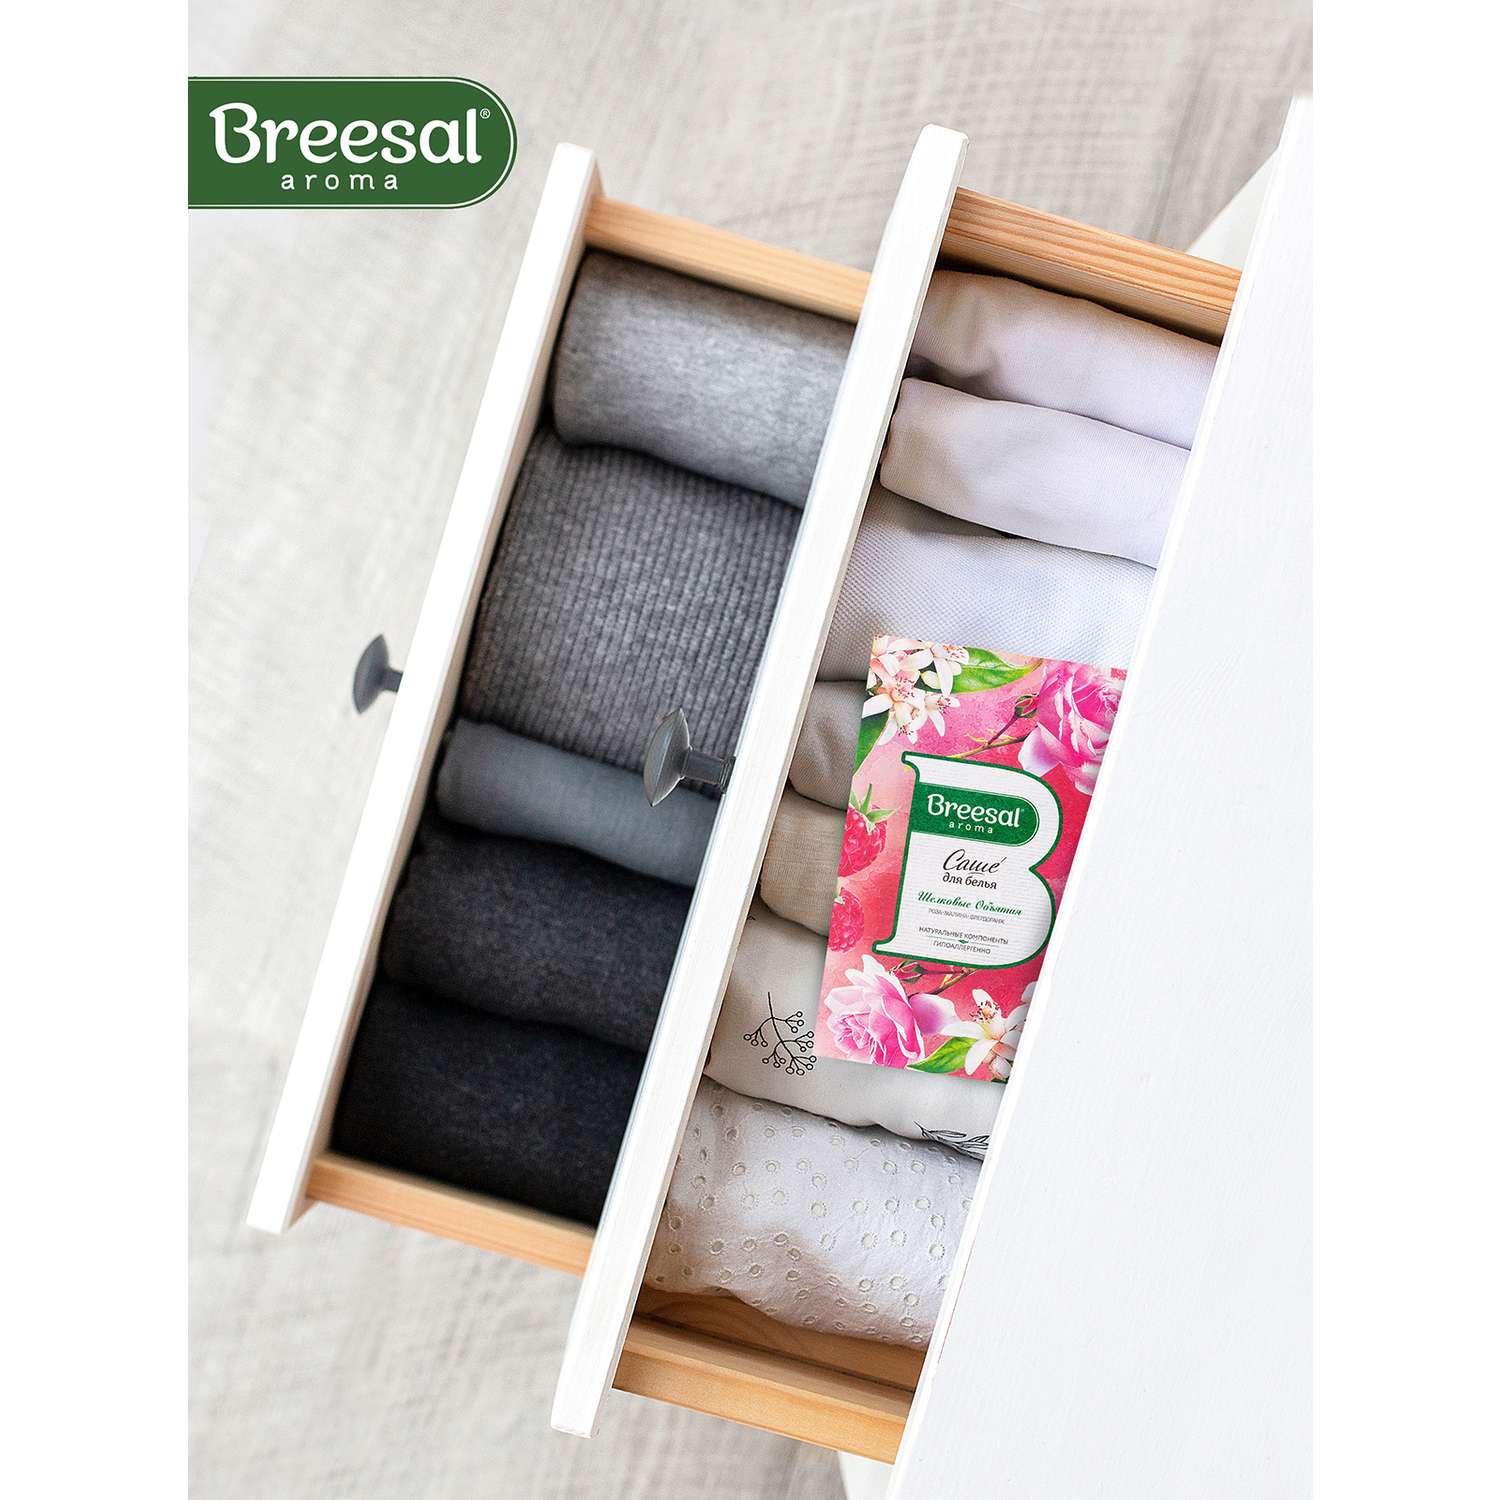 Ароматическое саше Breesal для гардероба шкафа и комода Шелковые объятия - фото 7